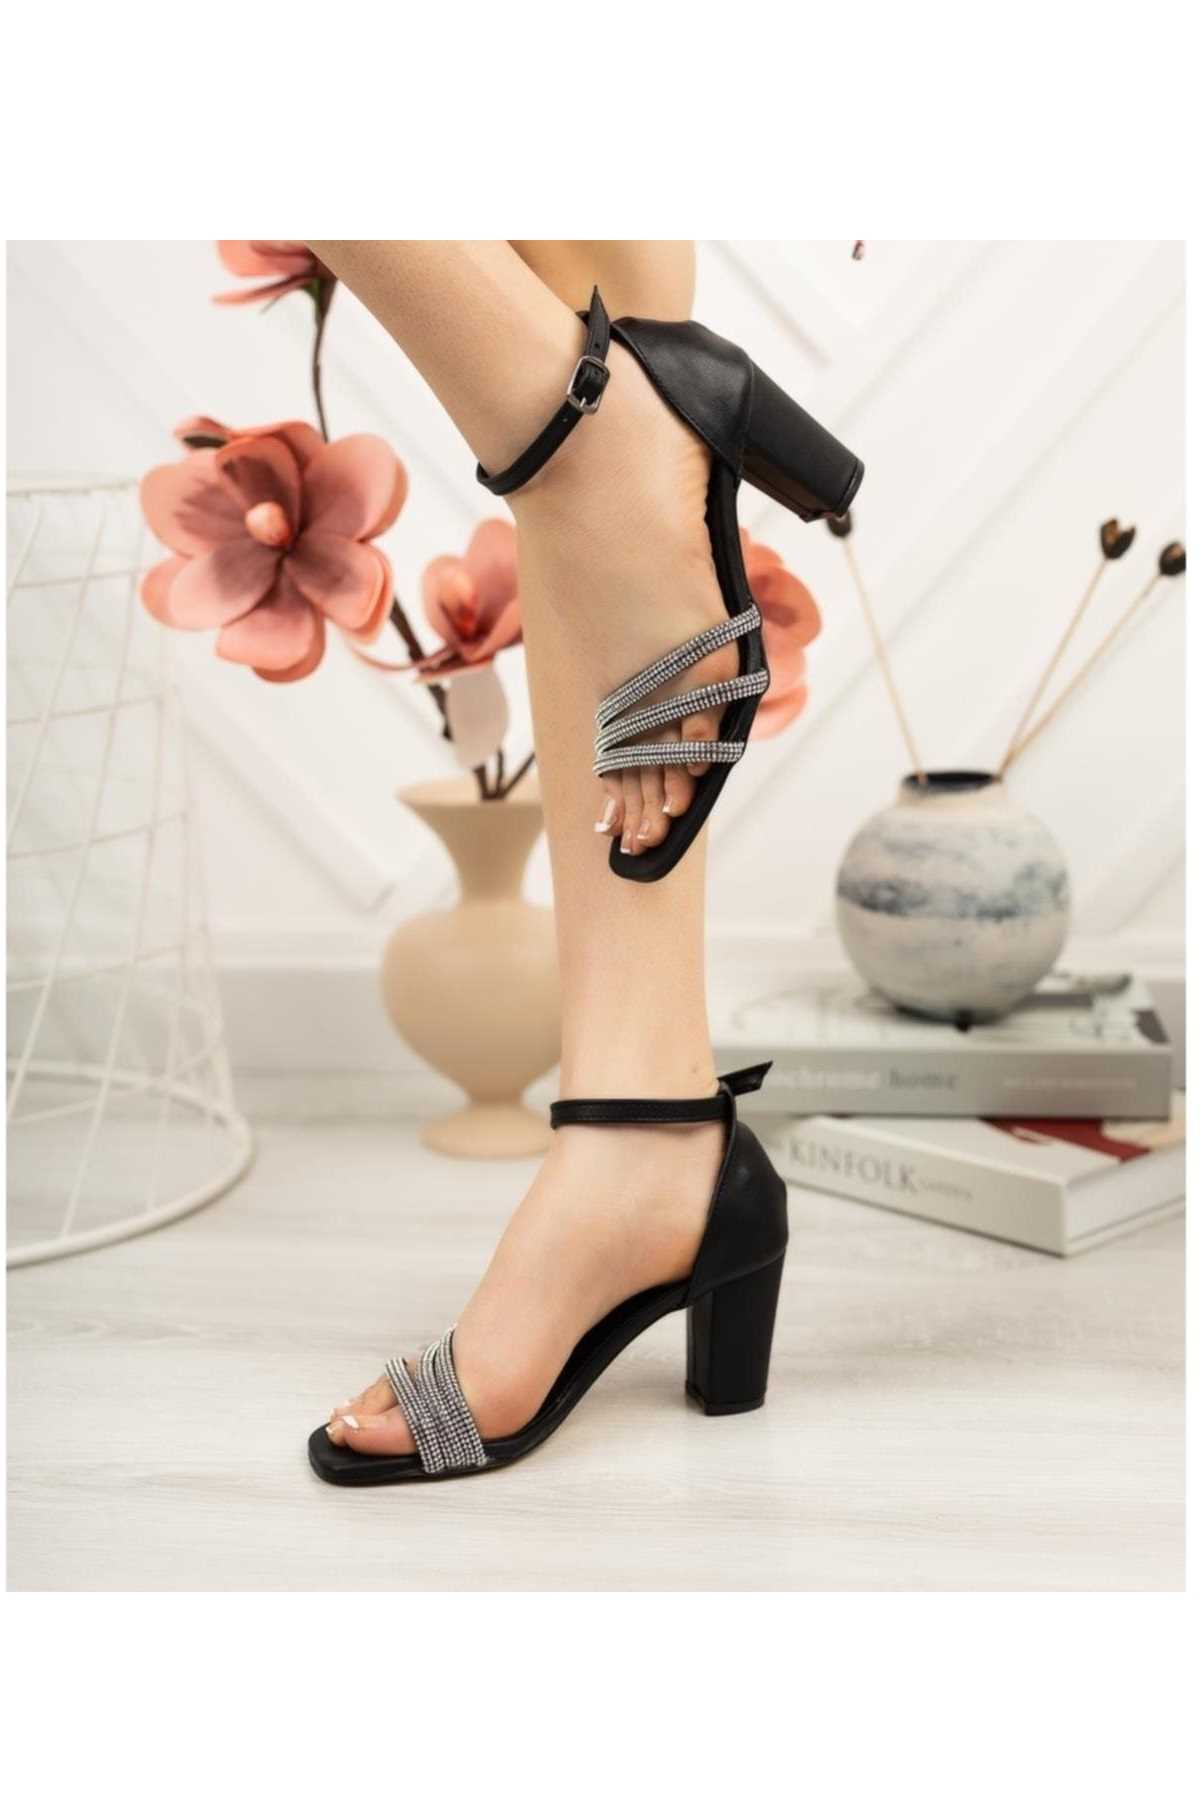 کفش پاشنه بلند زنانه طرح جدید شیک Tolgado رنگ مشکی کد ty242281428